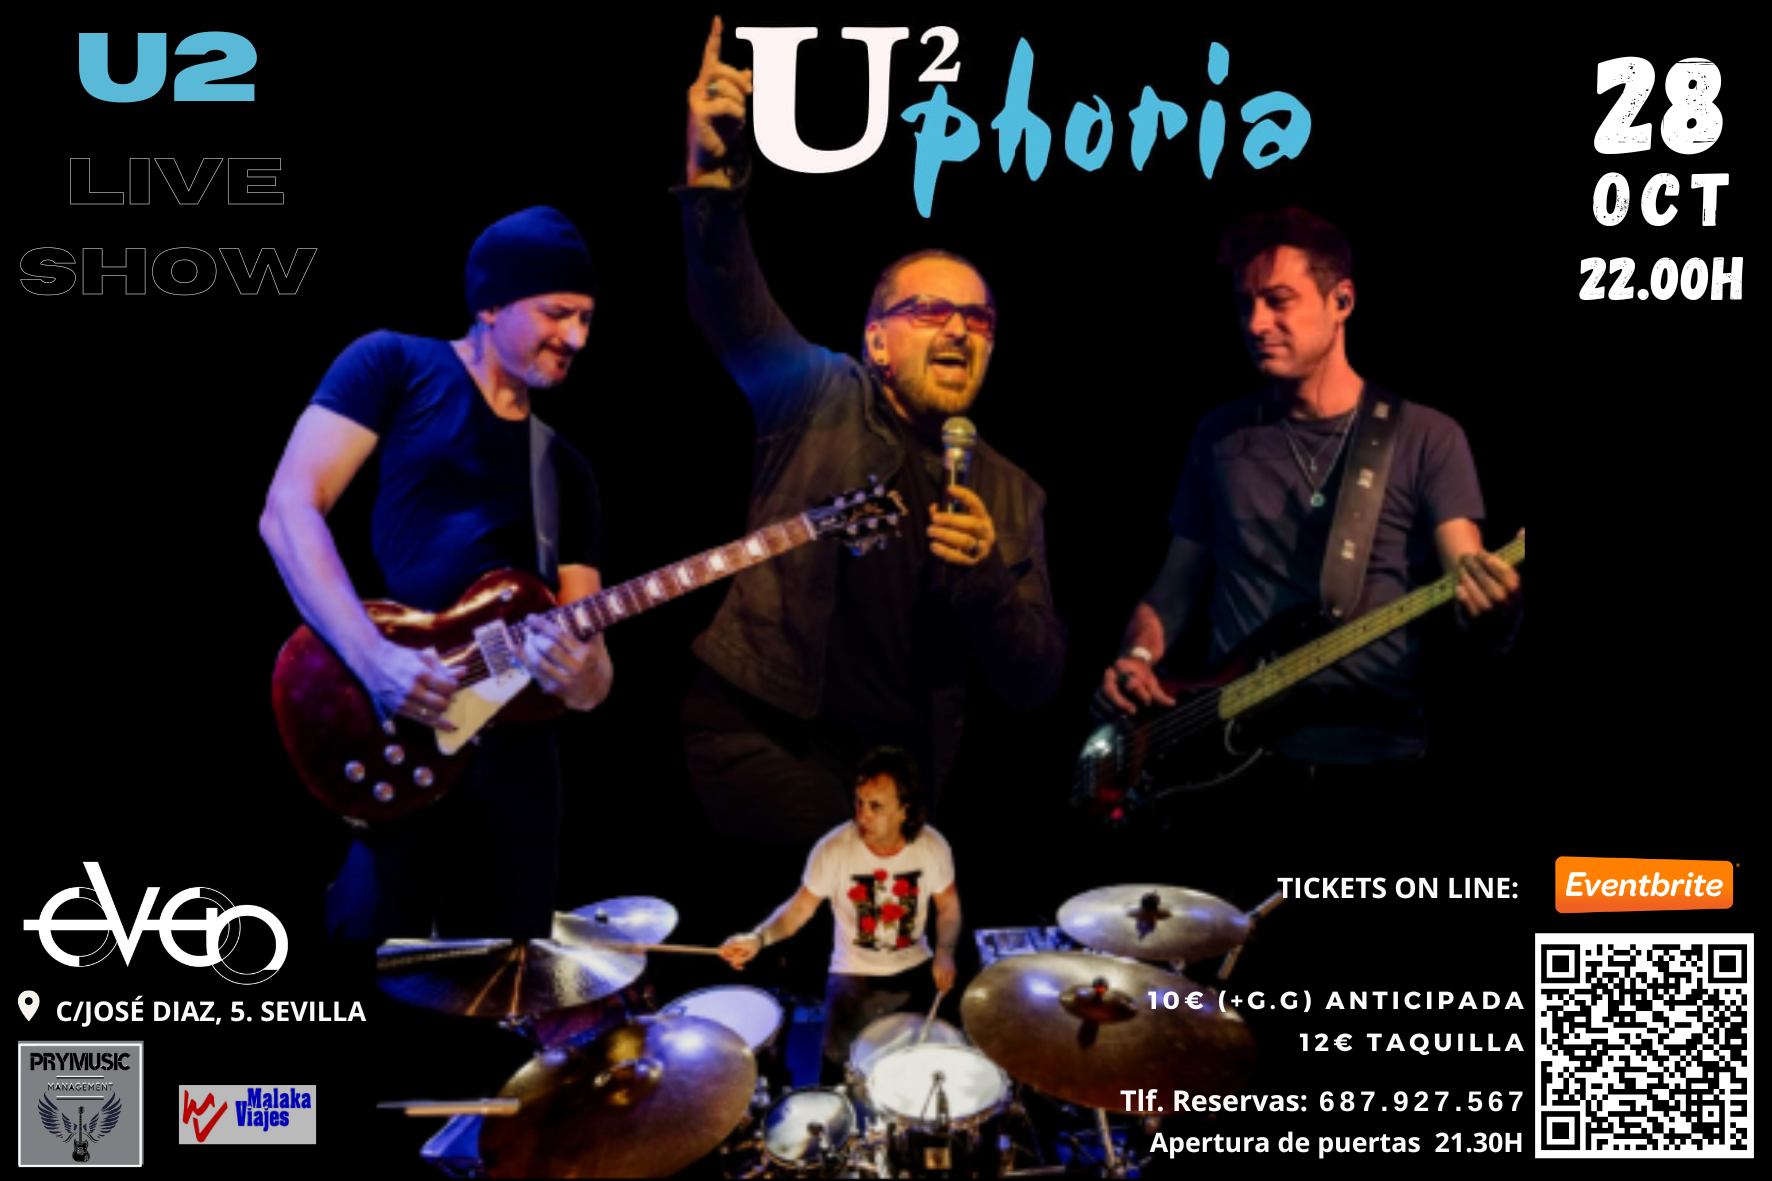  UPHORIA. Homenaje a U2 en SEVILLA.